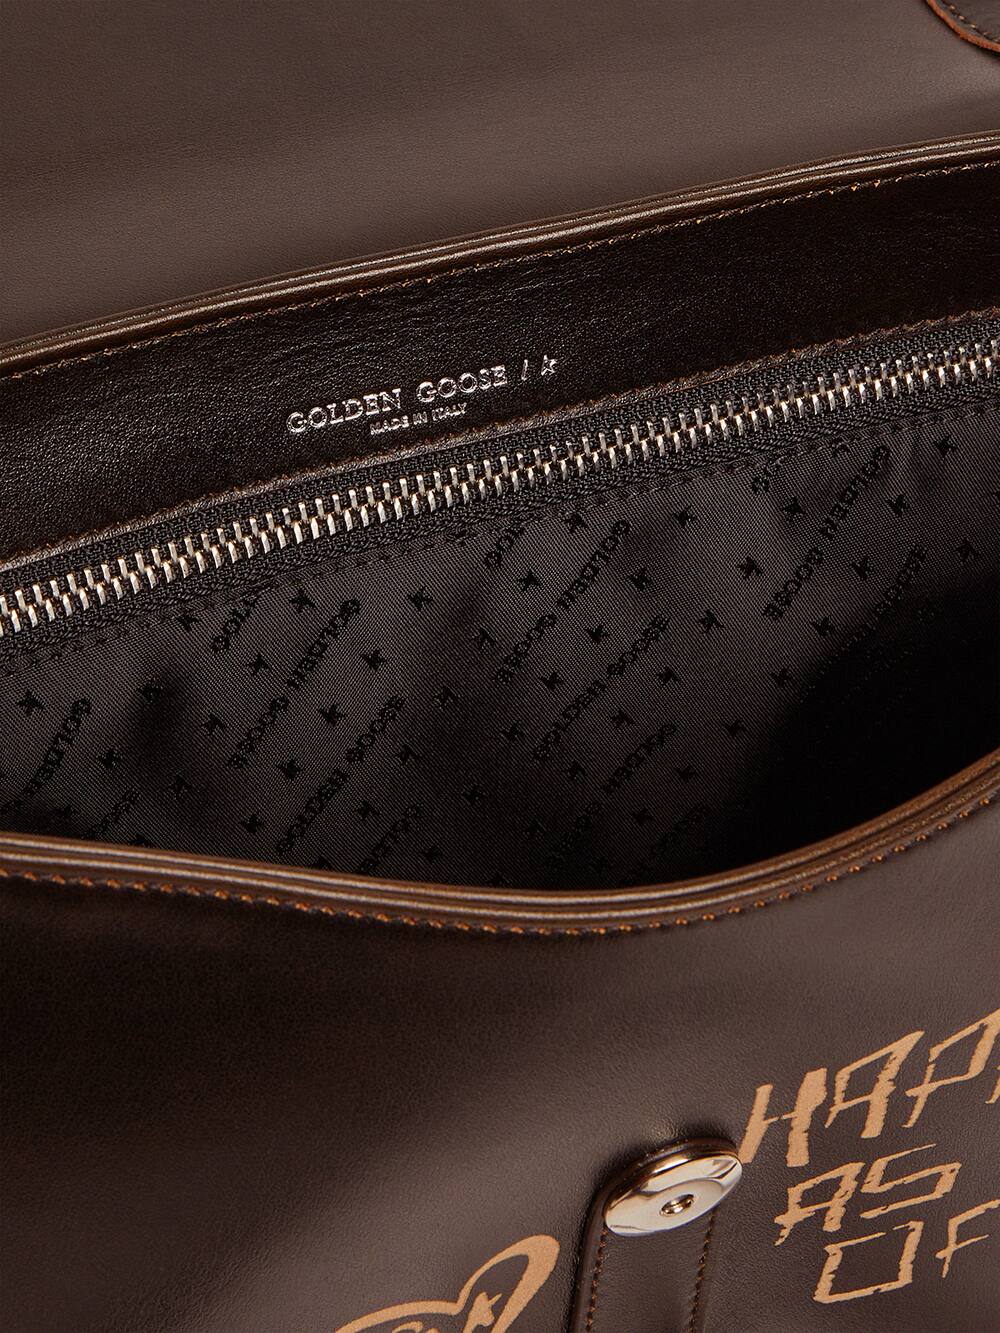 Golden Goose - Tasche Rodeo Bag Medium aus schwarzem Leder mit Kontrastschrift in 